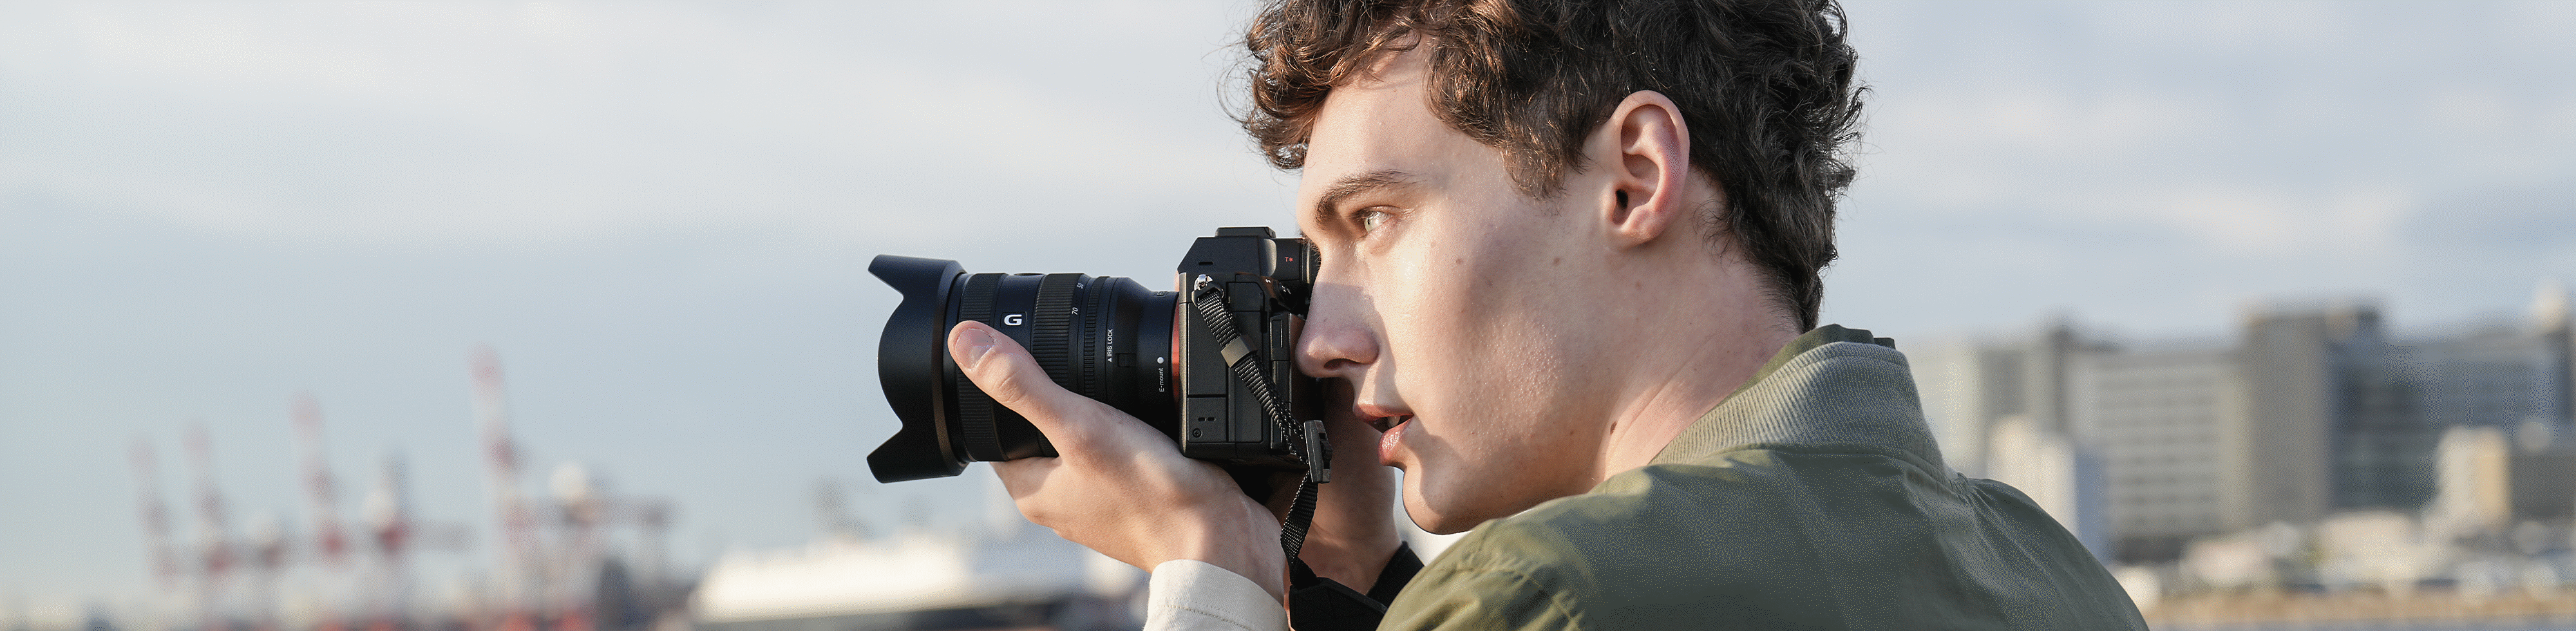 Egy férfi fotóz tengerparti helyszínen, kézből, keresővel